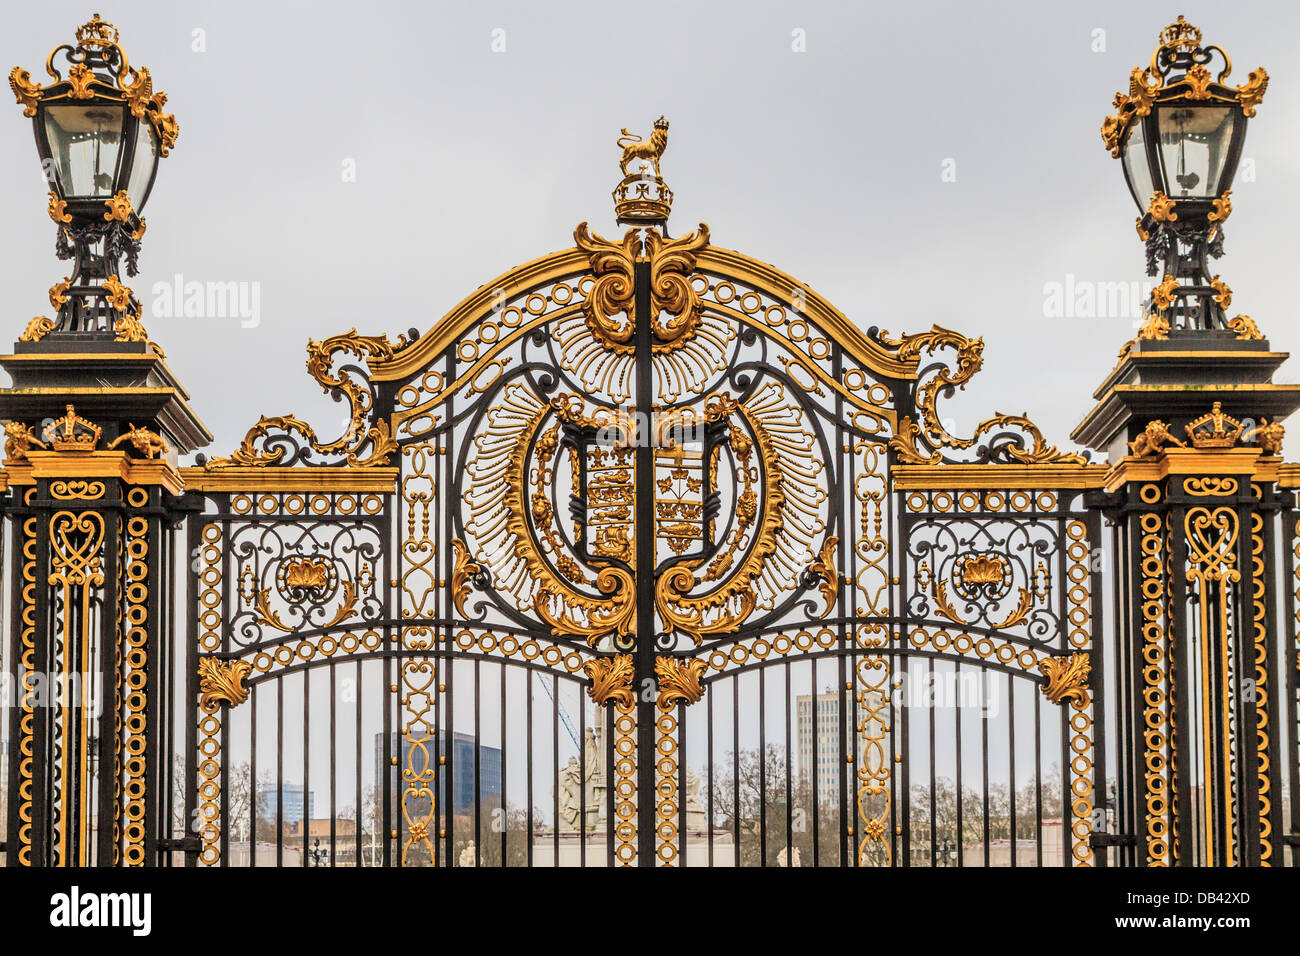 Porte ouvragée à Buckingham Palace, London, UK Banque D'Images